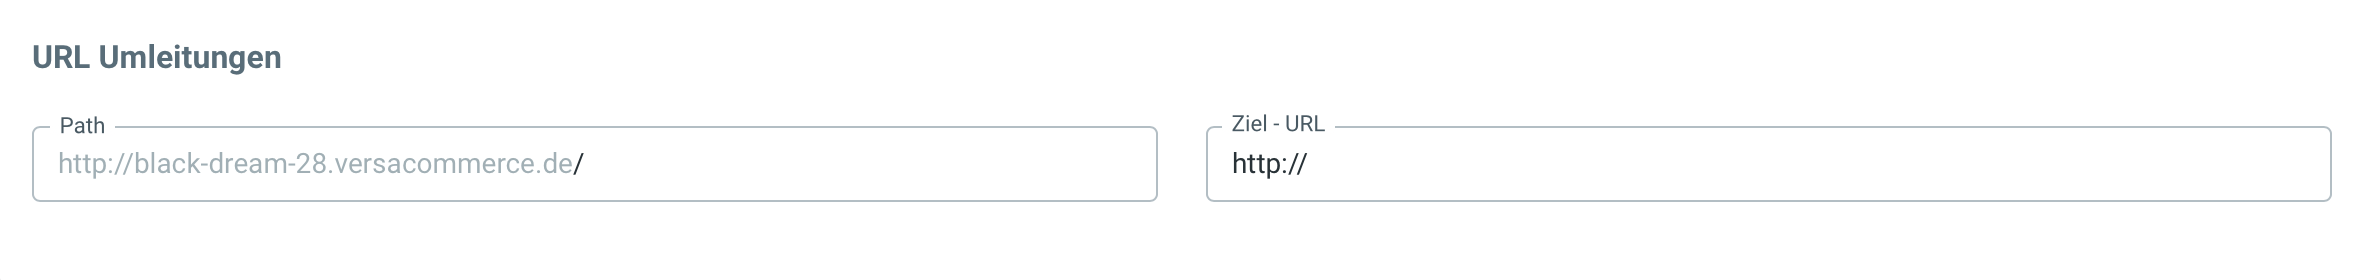 URL-Umleitungen